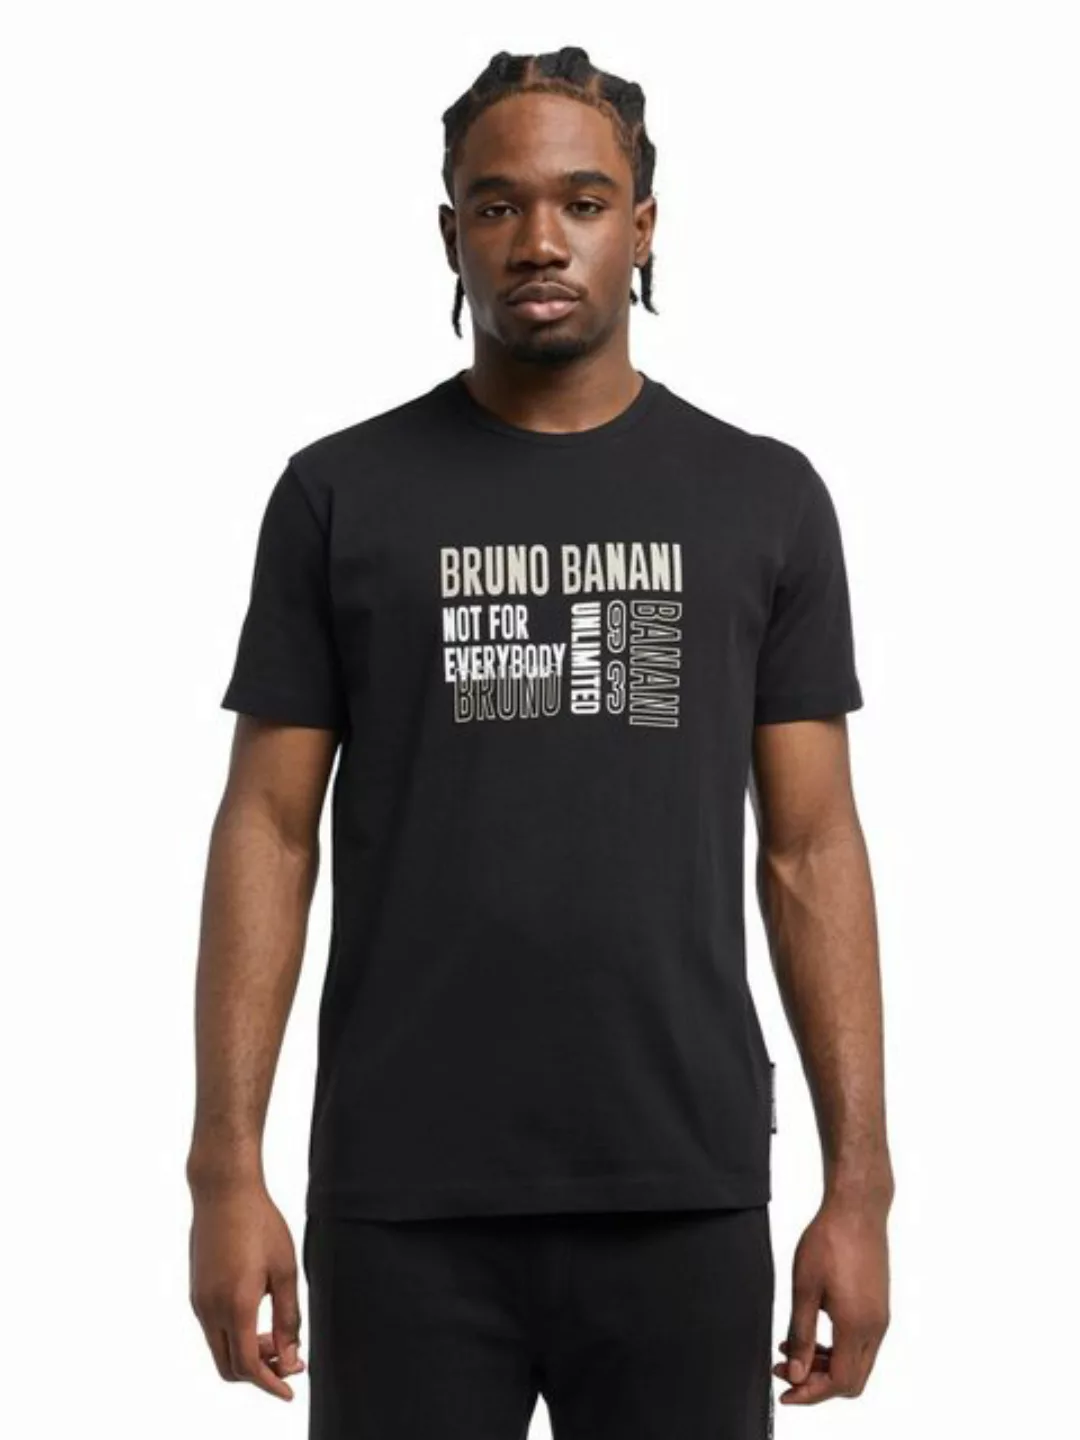 Bruno Banani T-Shirt CLEMENTS günstig online kaufen